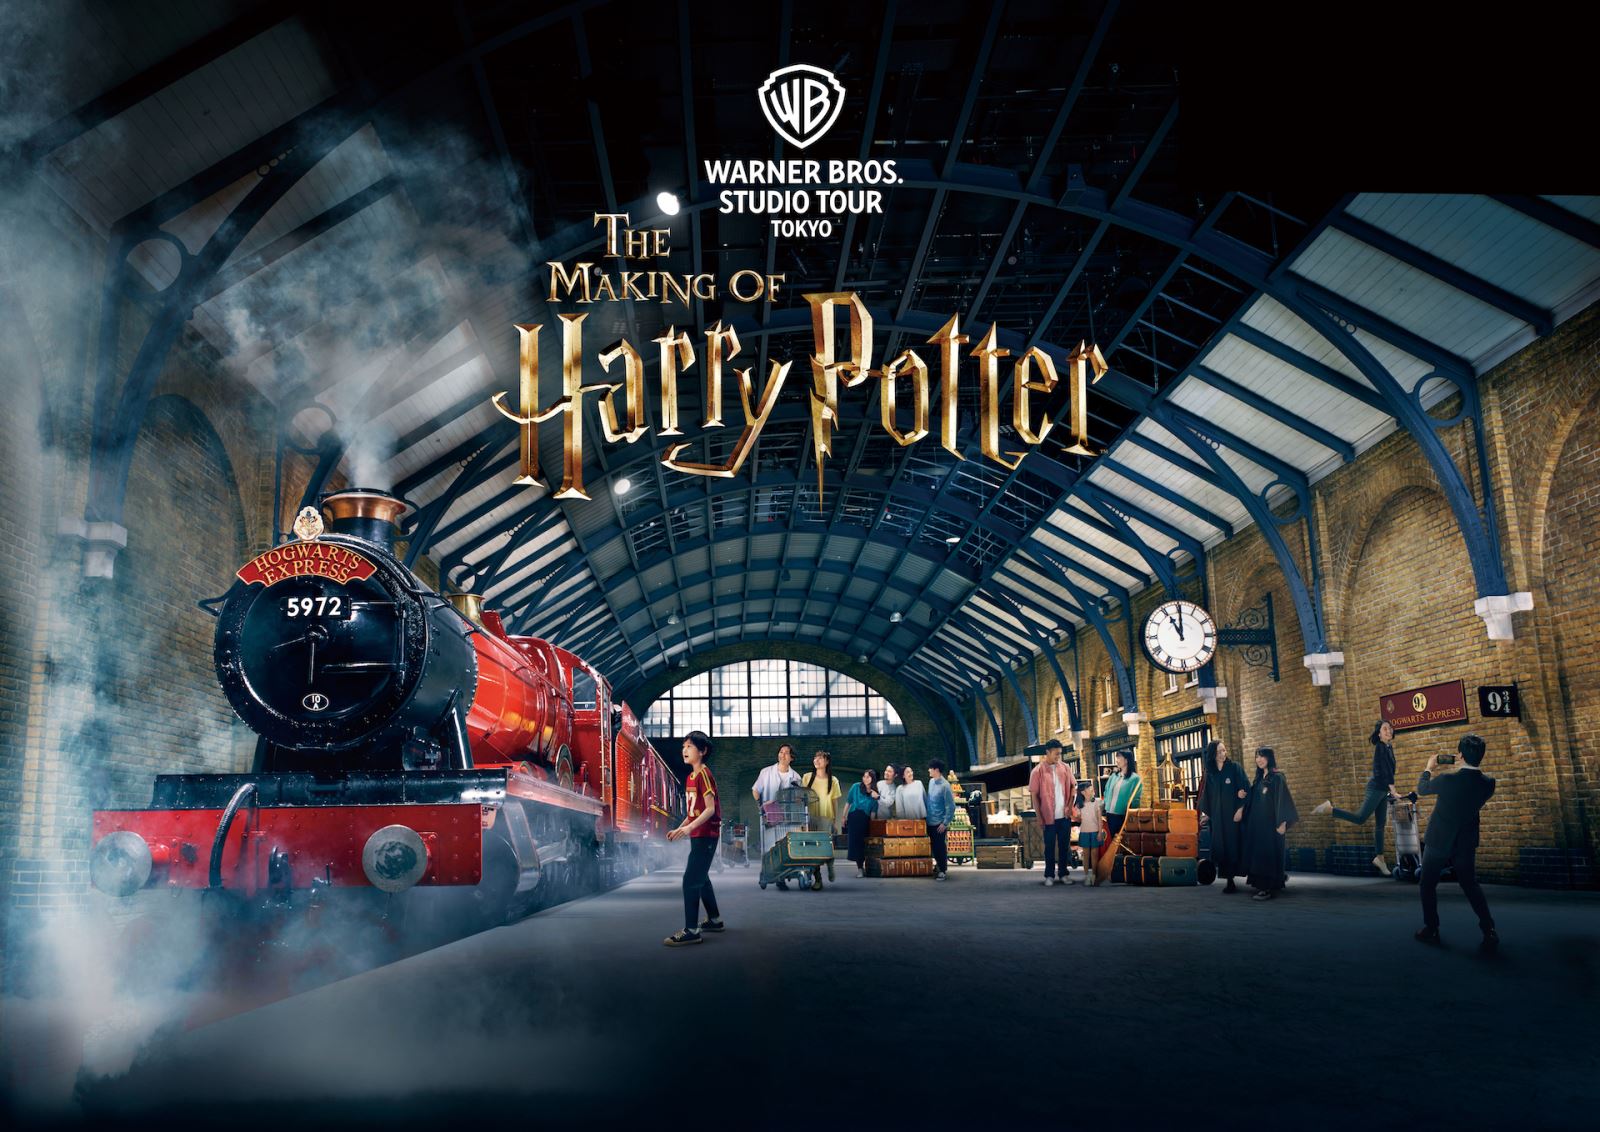 Công viên chủ đề Warner Bros. Studio Tour Tokyo - The Making of Harry Potter là một chuyến tham quan đi bộ. Ảnh: Warner Bros